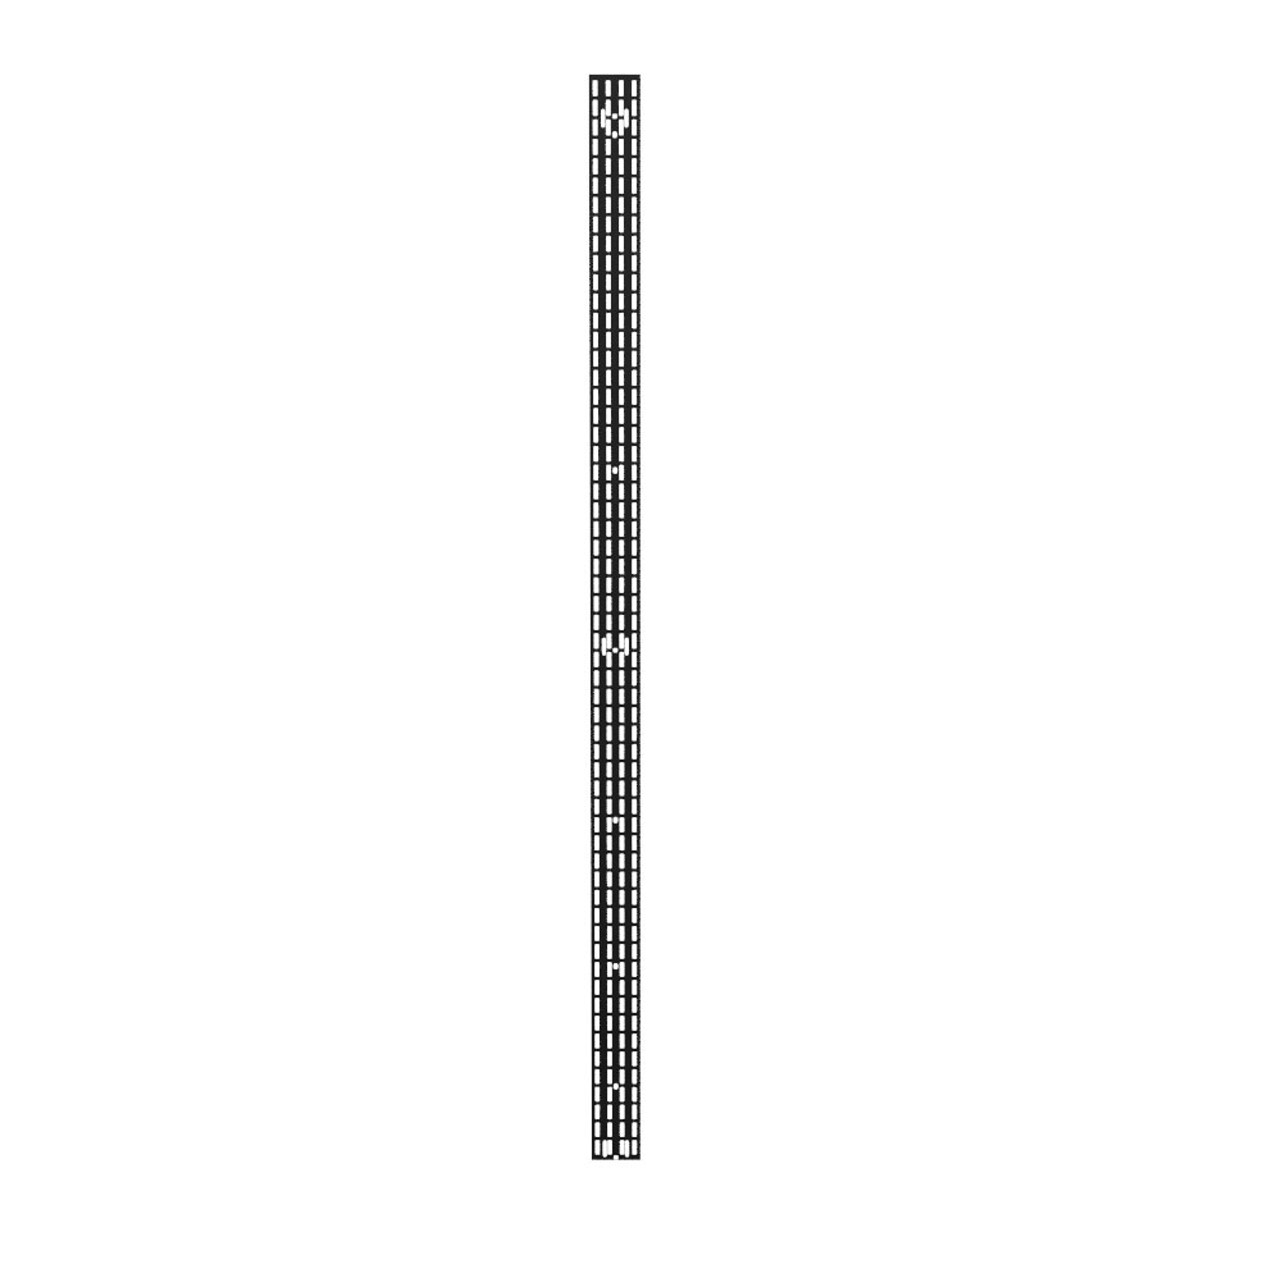 42U Vertical Cable Management Rail, Rack Mount, 0.26 x 3.5 x 76